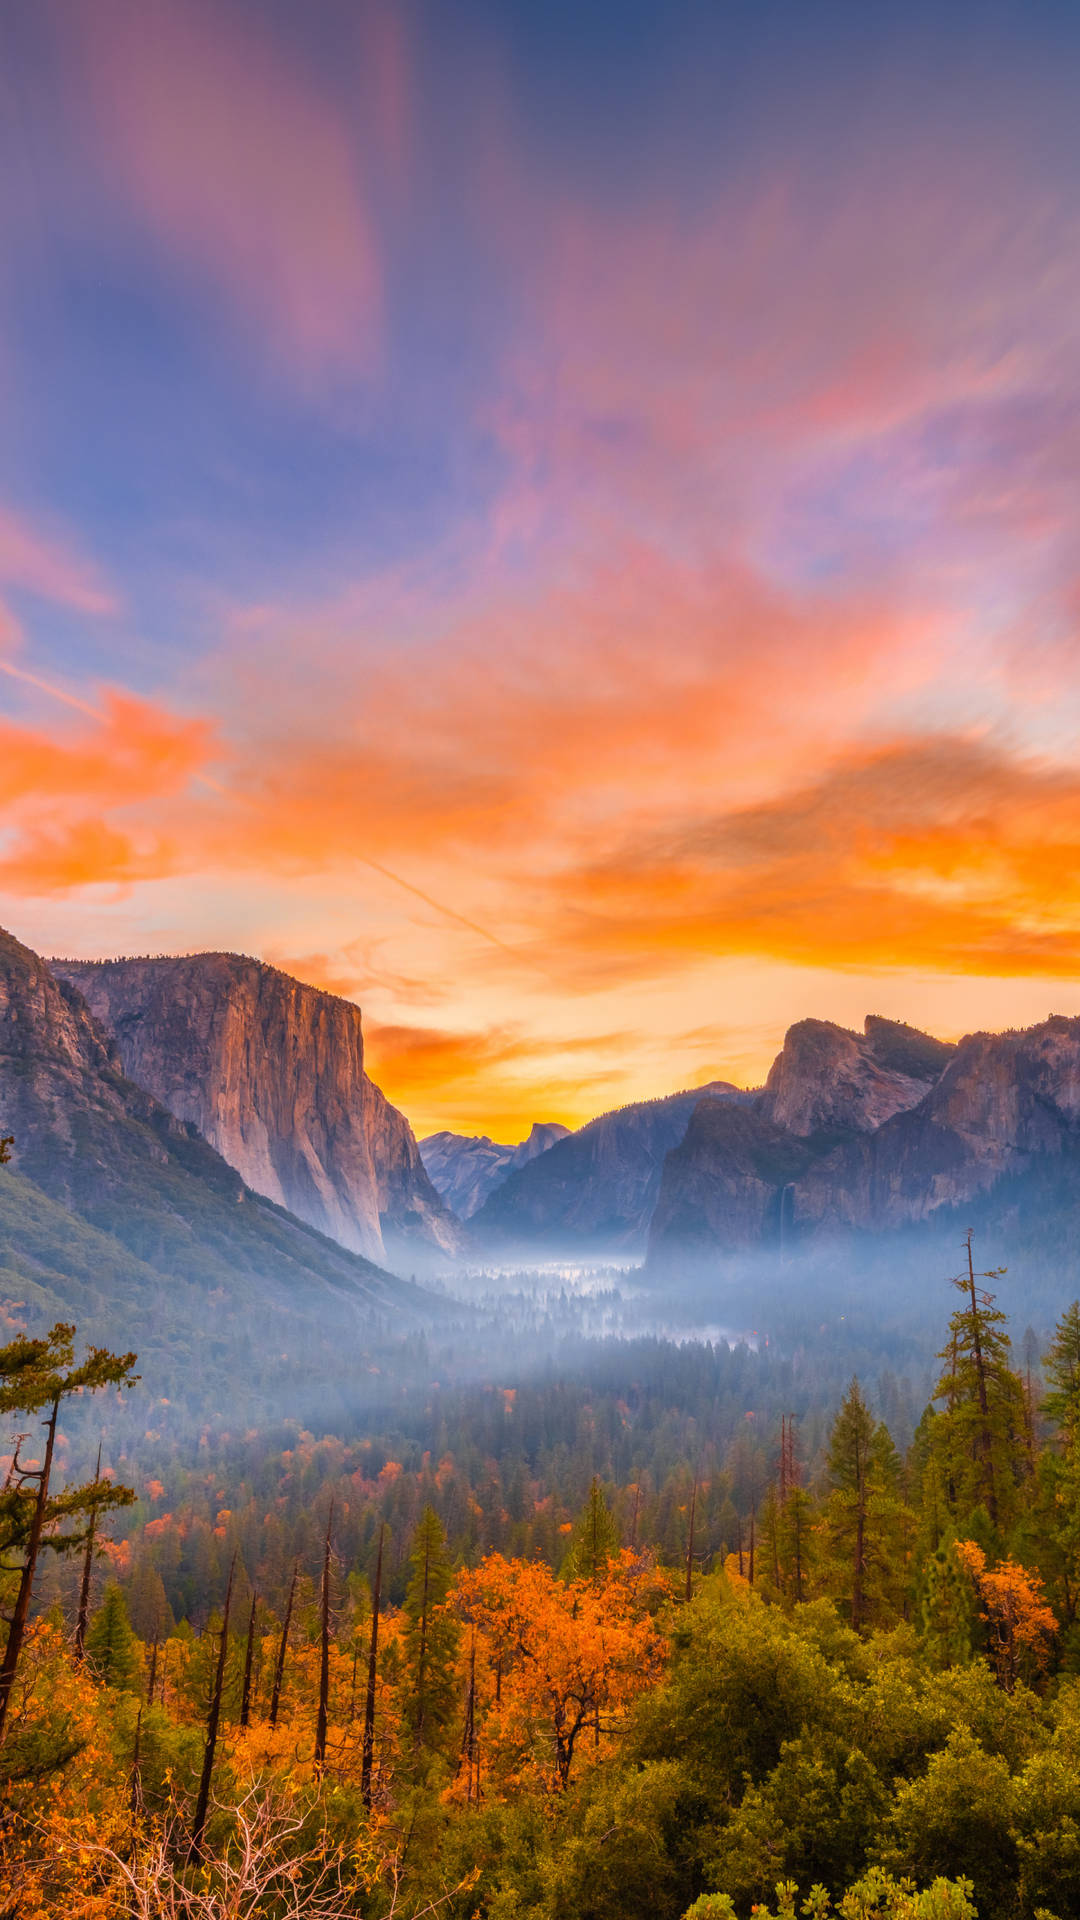 Bosquede Pinos En El Iphone De Yosemite. Fondo de pantalla